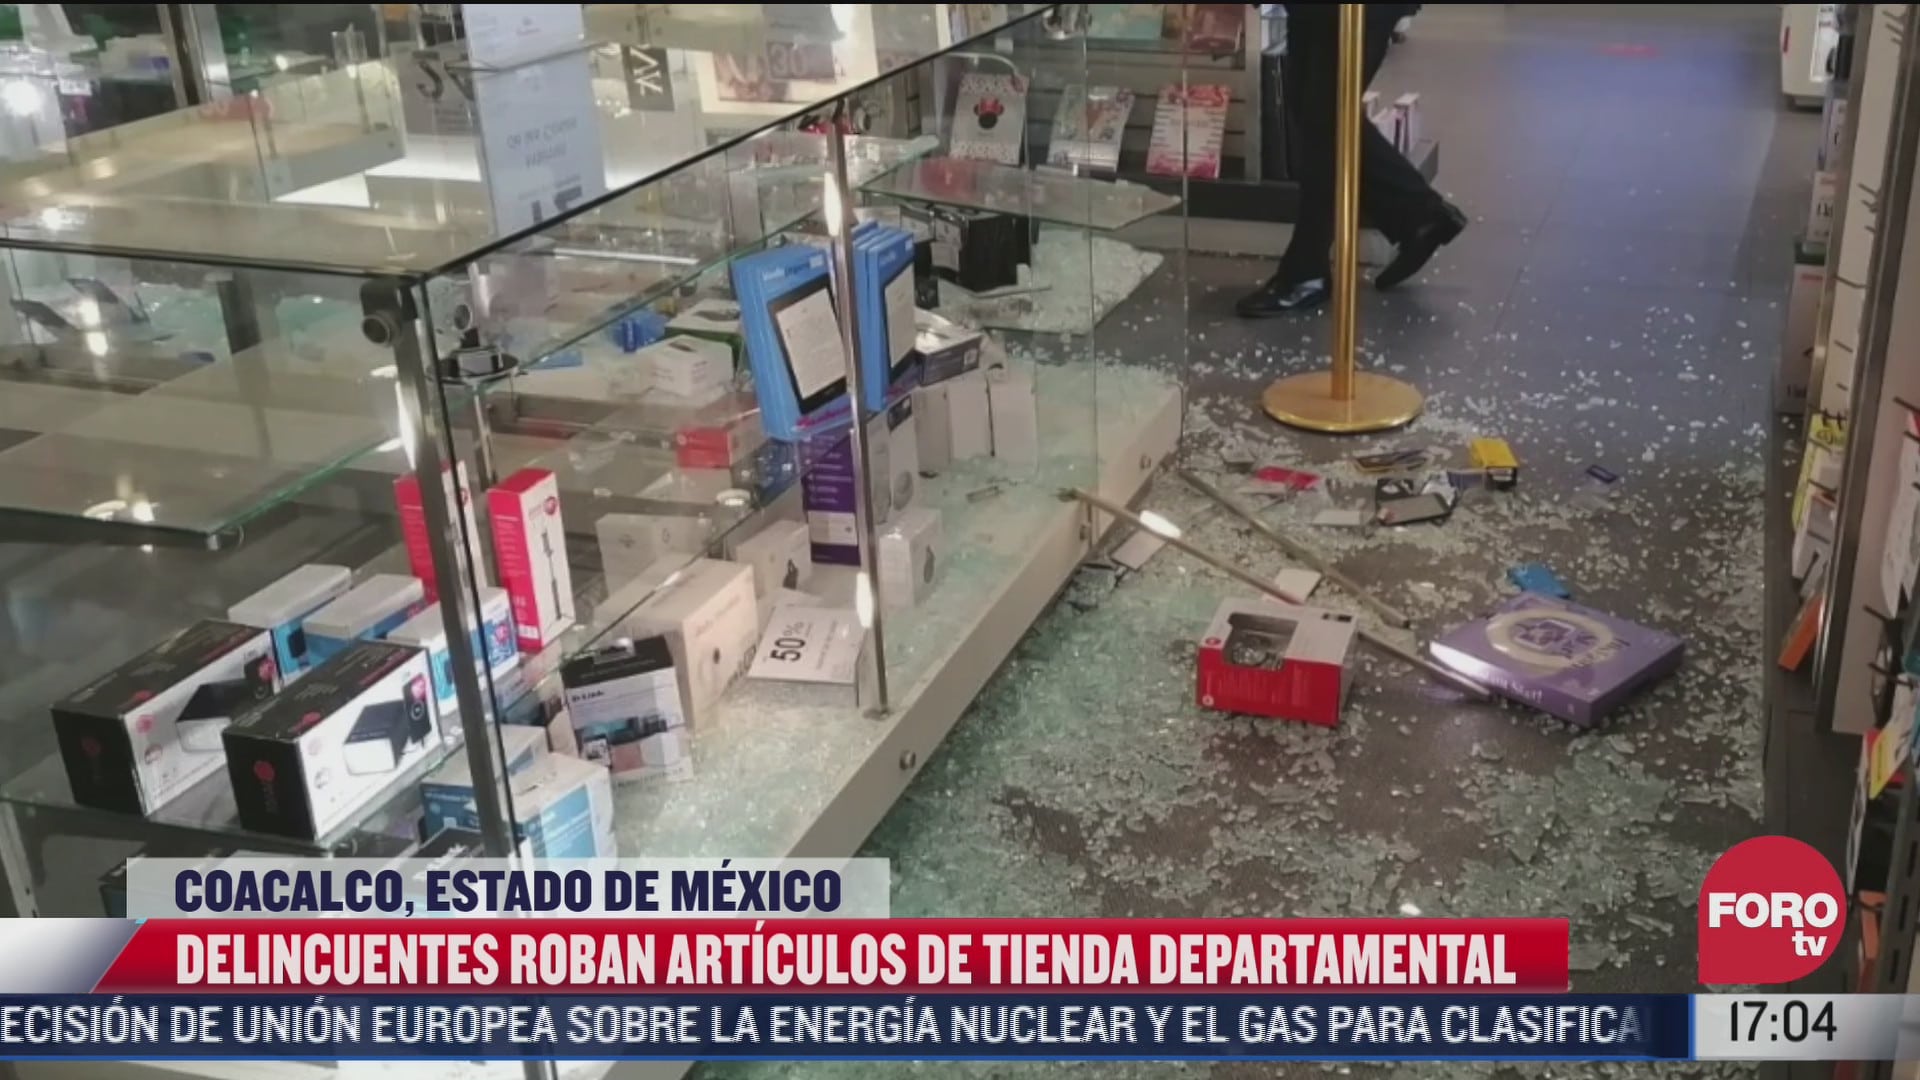 Delincuentes asaltan tienda departamental en Coacalco; rompen cristales y se llevan artículos